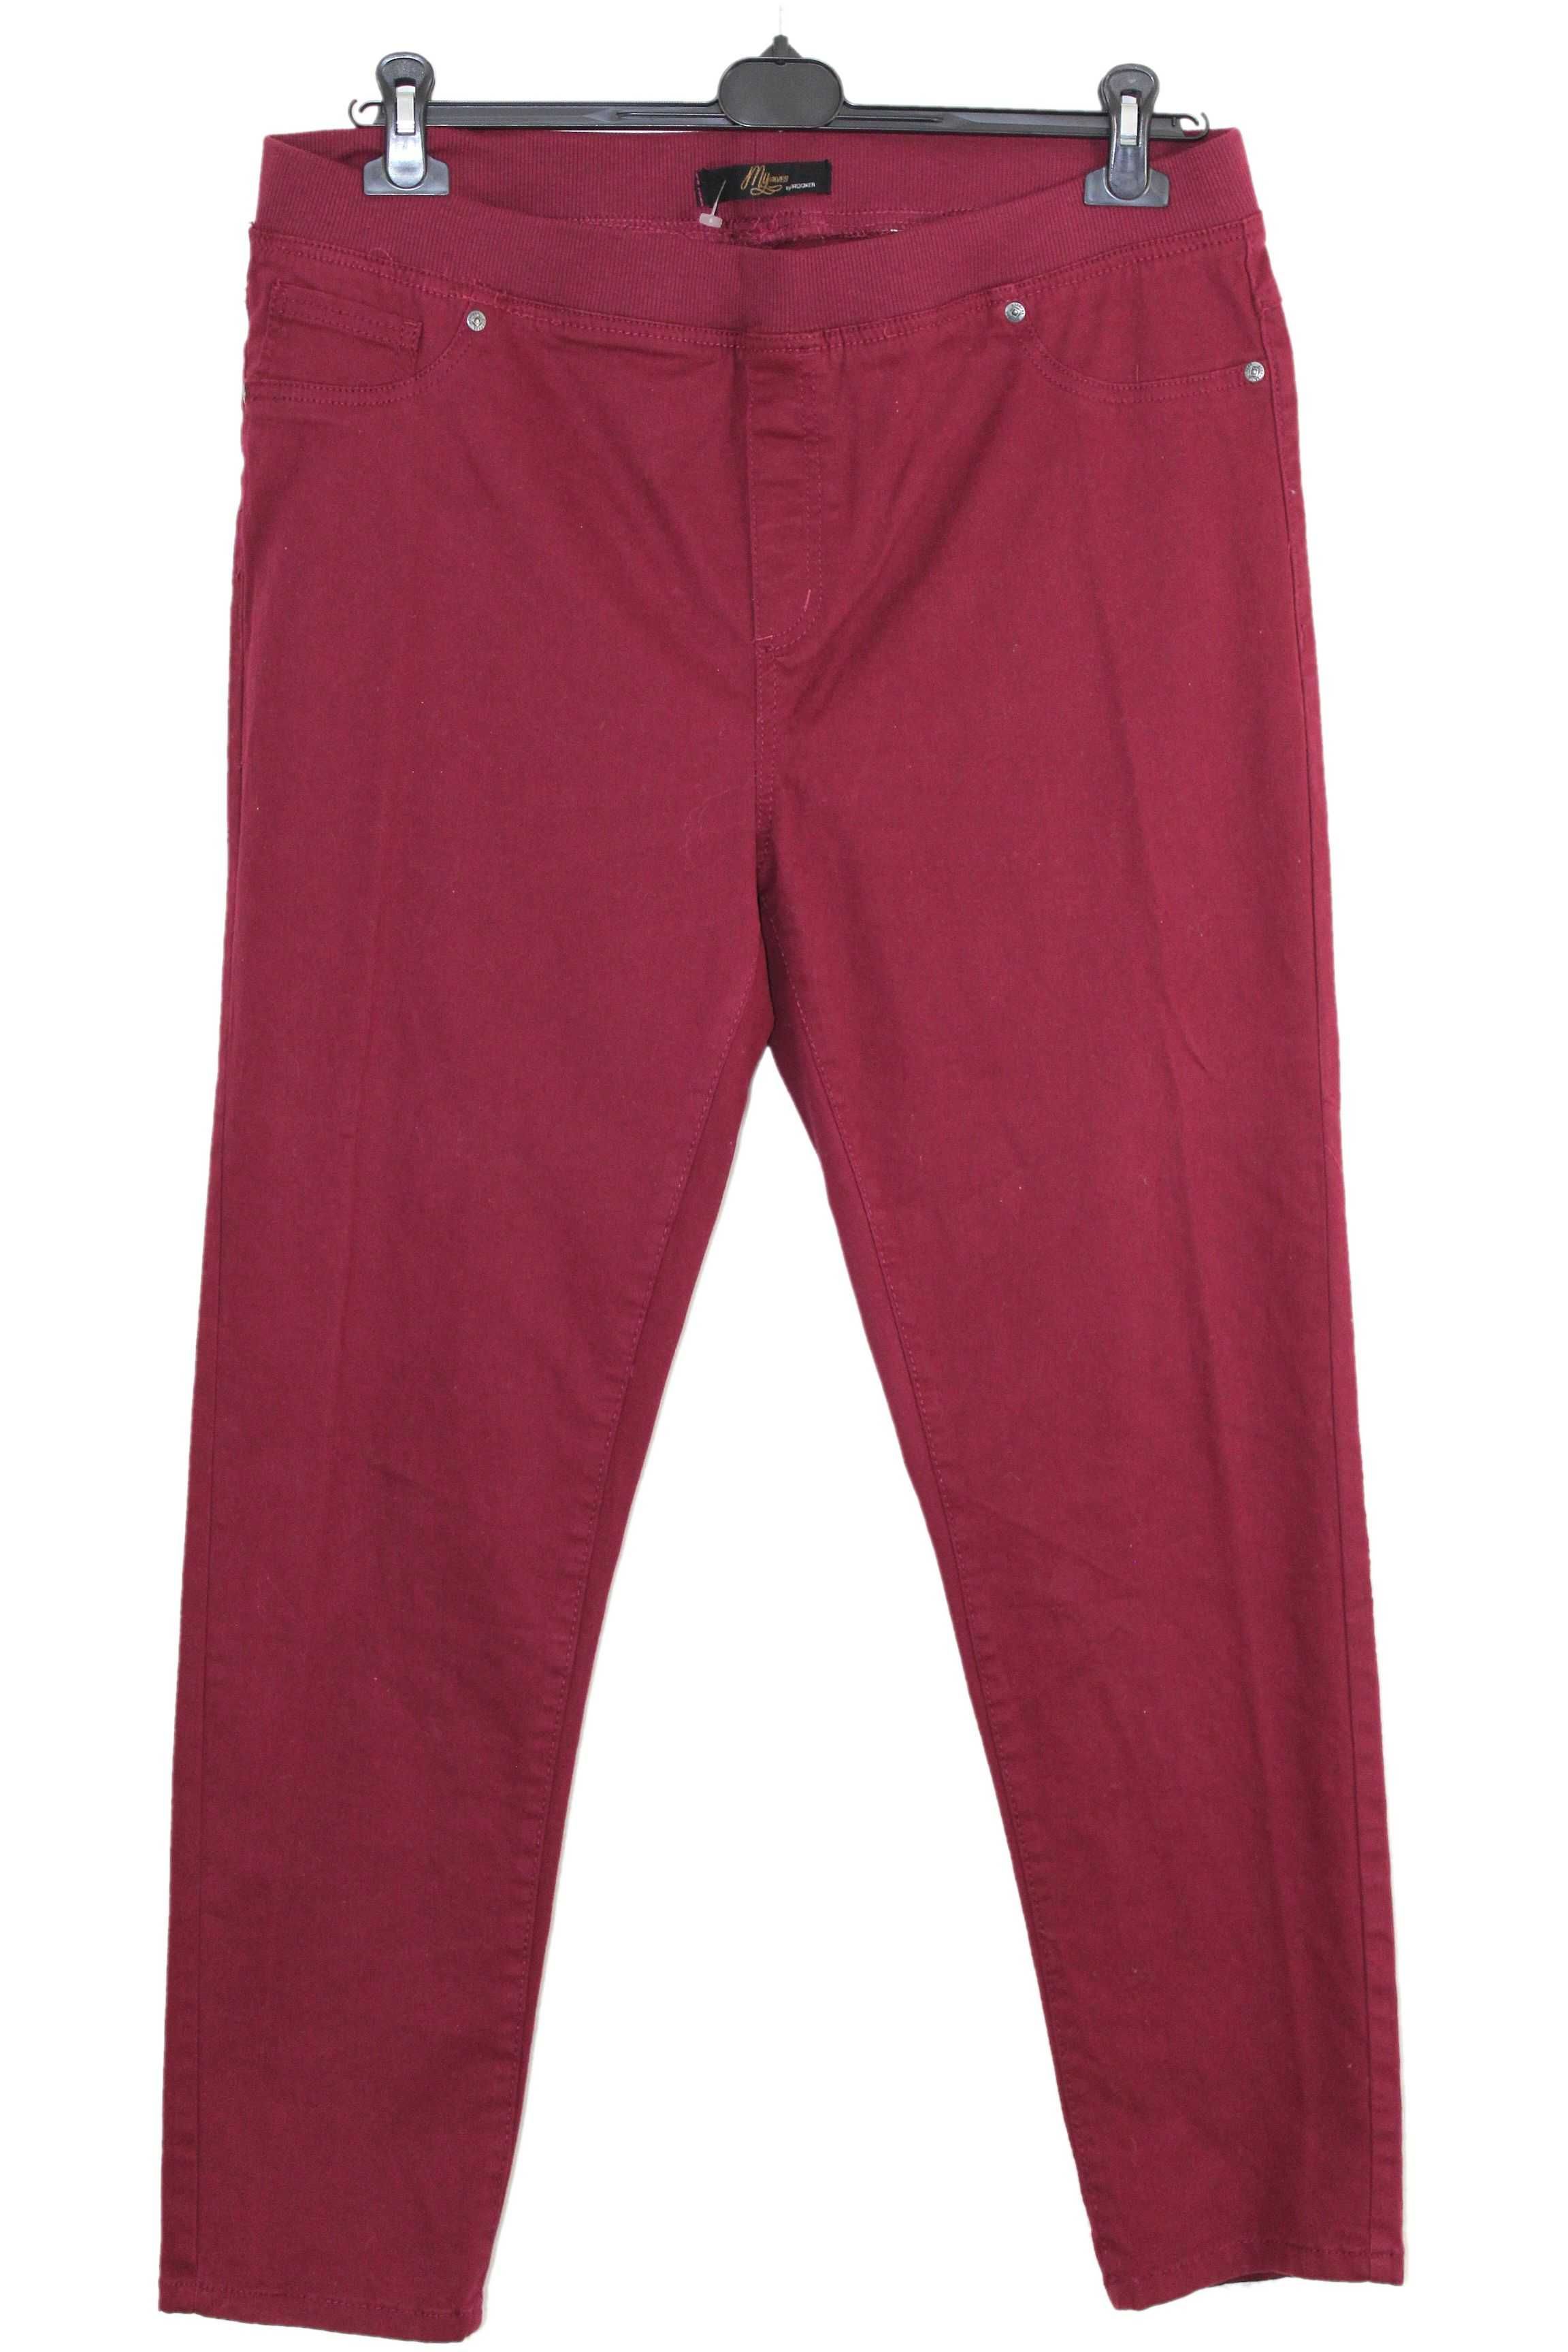 t1 STOOKER Modne Damskie Spodnie Jeans w Gumkę Jegginsy 48/50 4XL/5XL